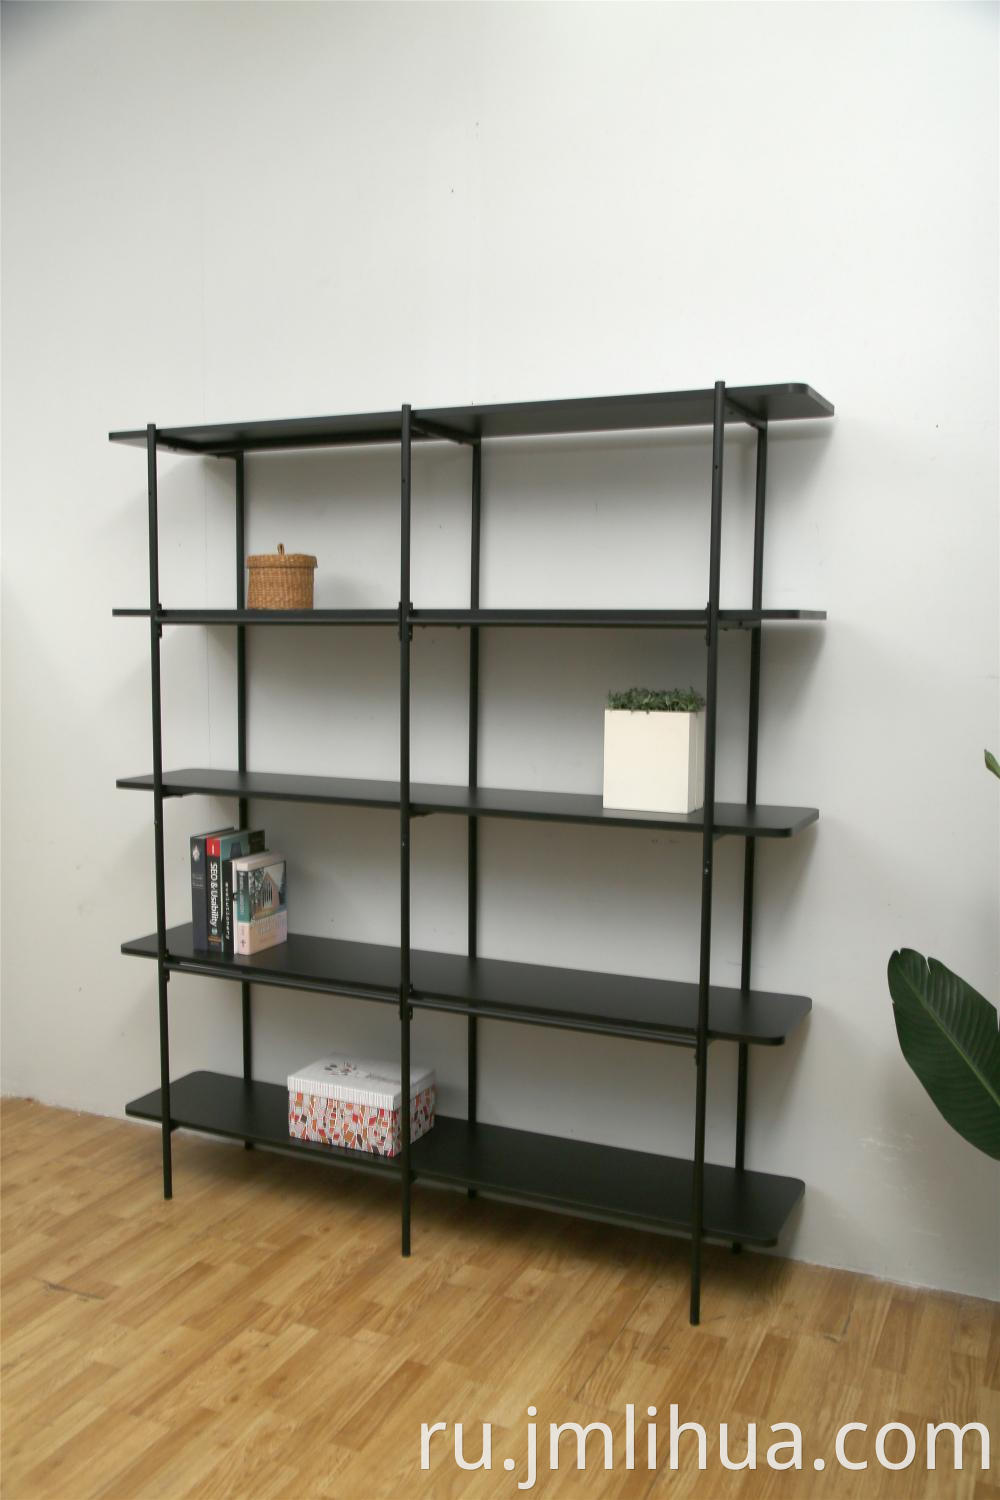 5 Tiers Shelf 